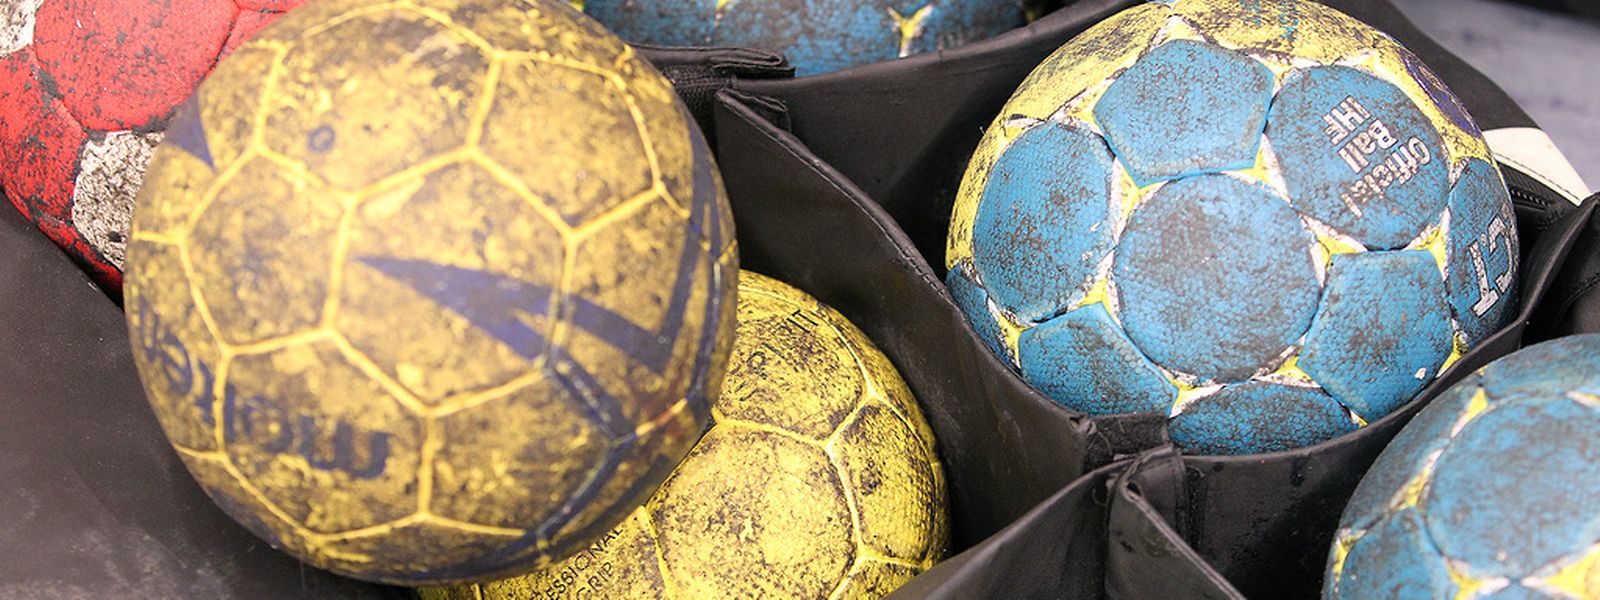 Am 14. Dezember wird Handball in Bascharage groß geschrieben.